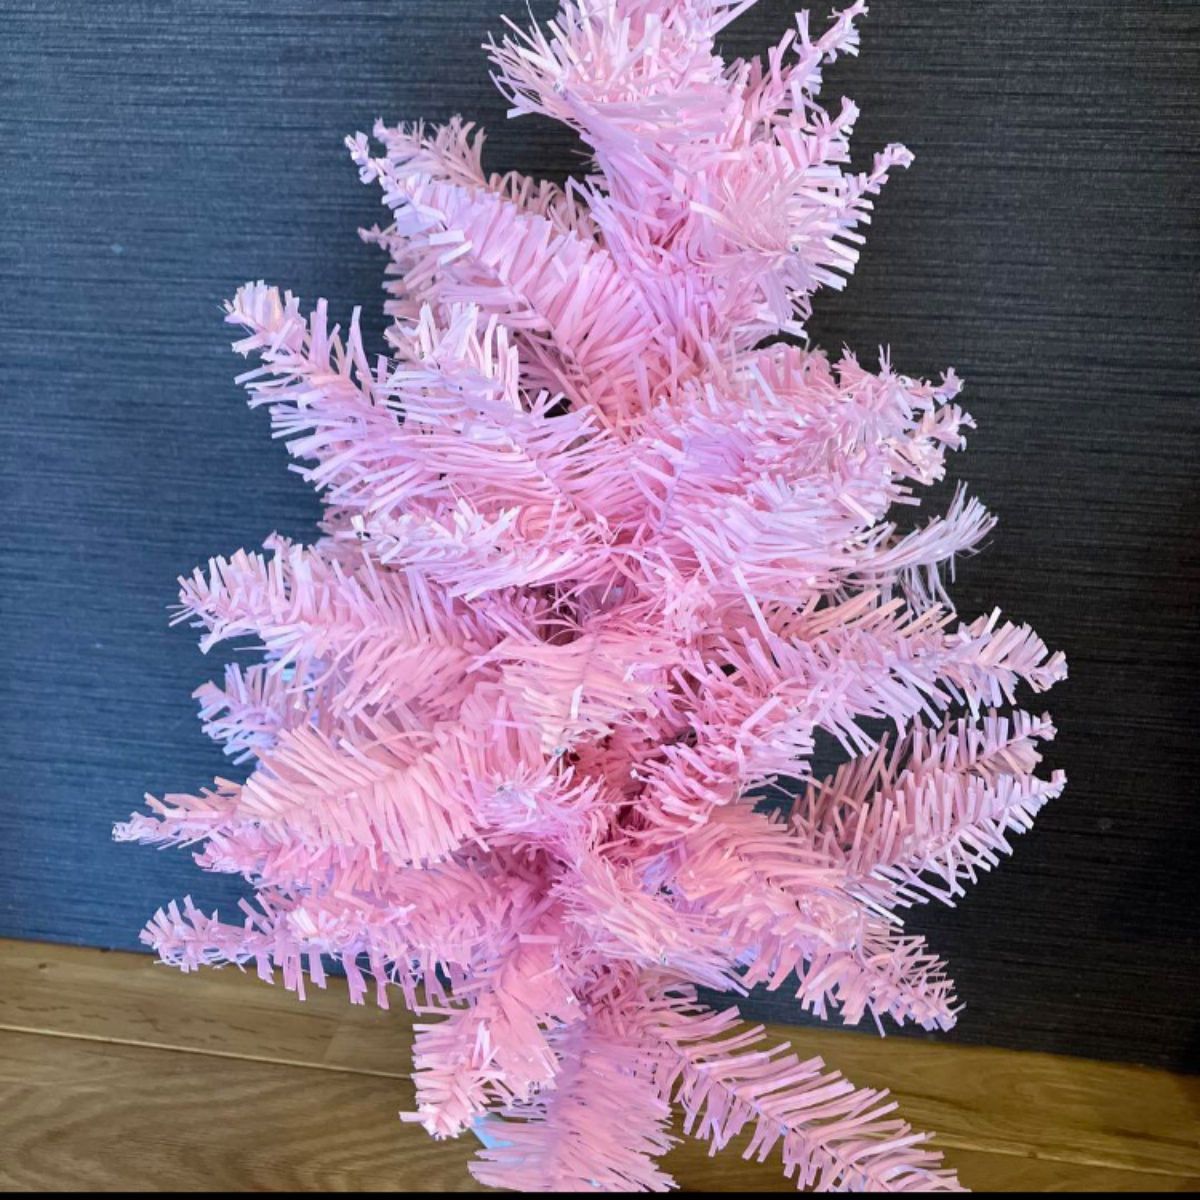 クリスマスツリー ピンク ライト付き オーナメント付き 卓上クリスマスツリー 